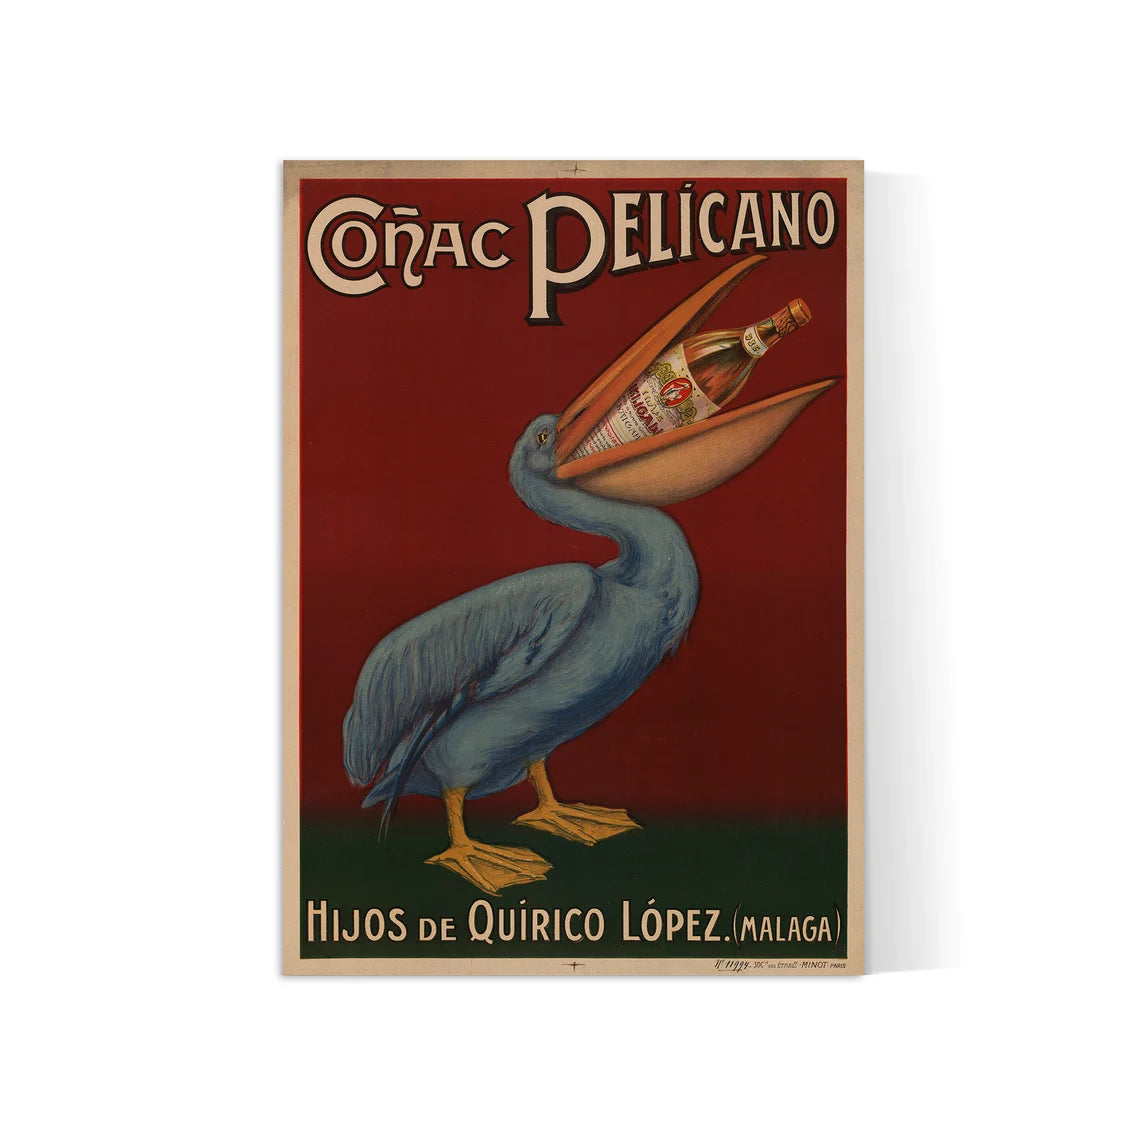 Affiche alcool vintage "Cognac Pelicano" - Art Nouveau - Haute Définition - papier mat 230gr/m2